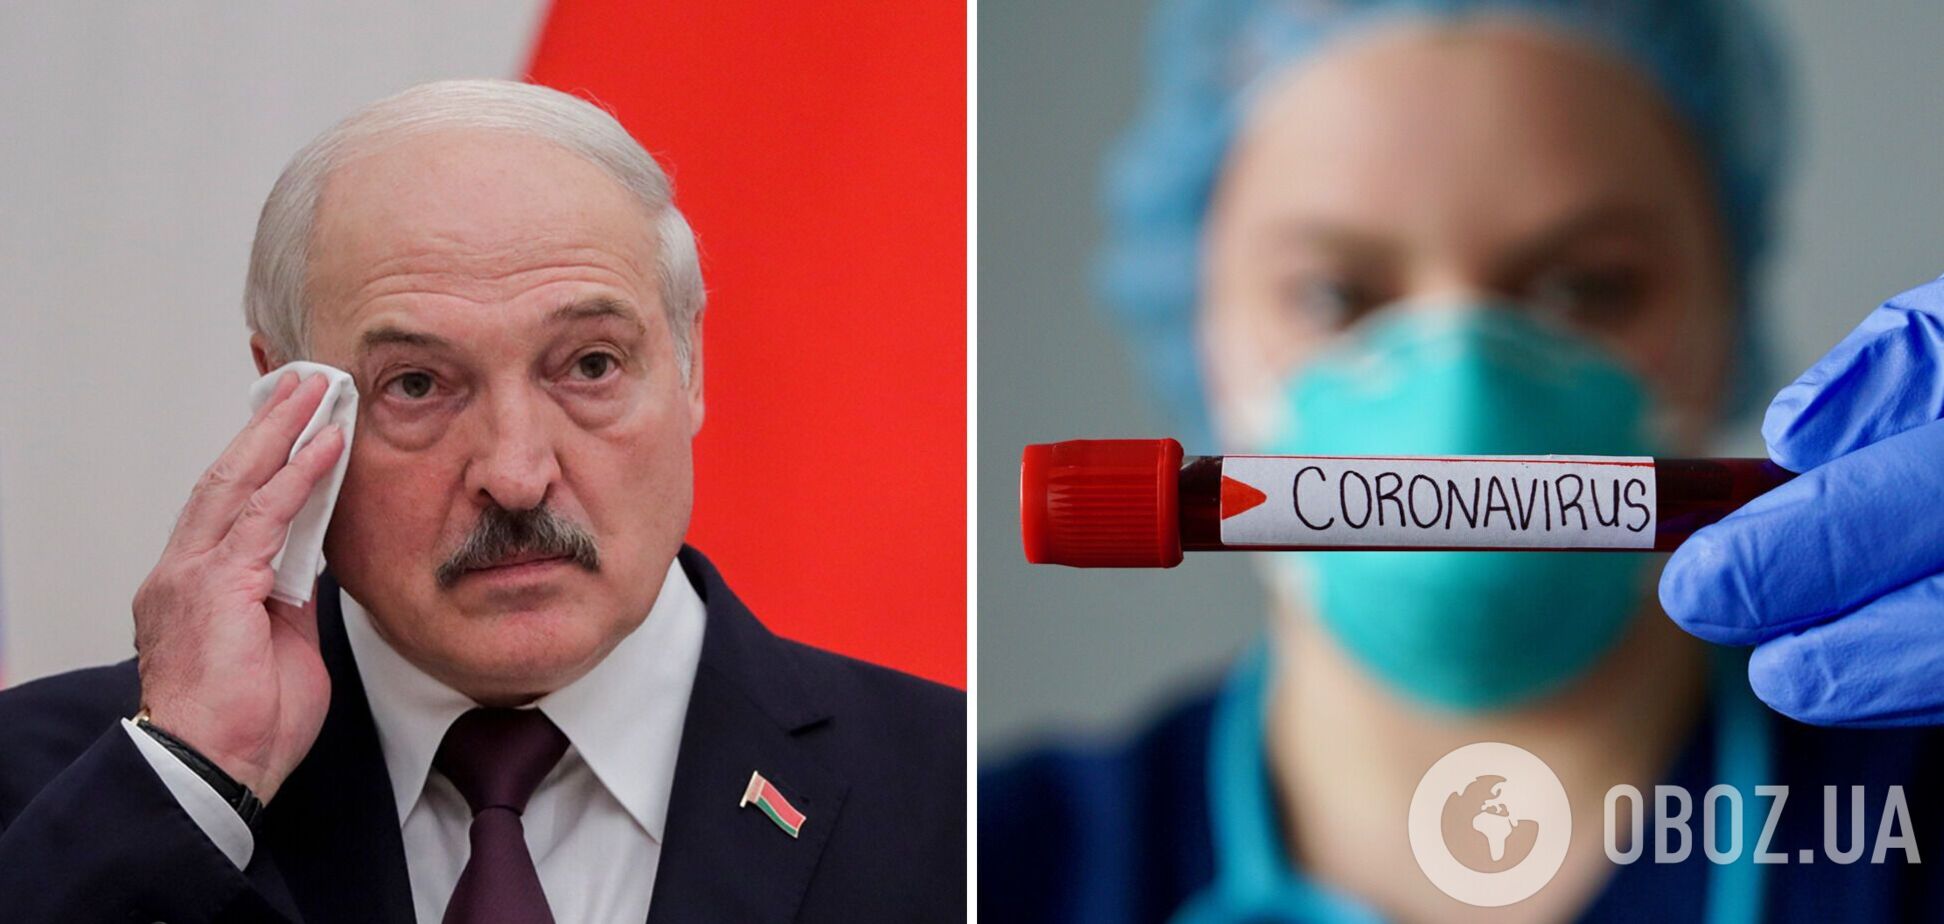 Людей вывозили в трупных мешках пачками: в Беларуси рассказали, как режим Лукашенко 'победил' коронавирус